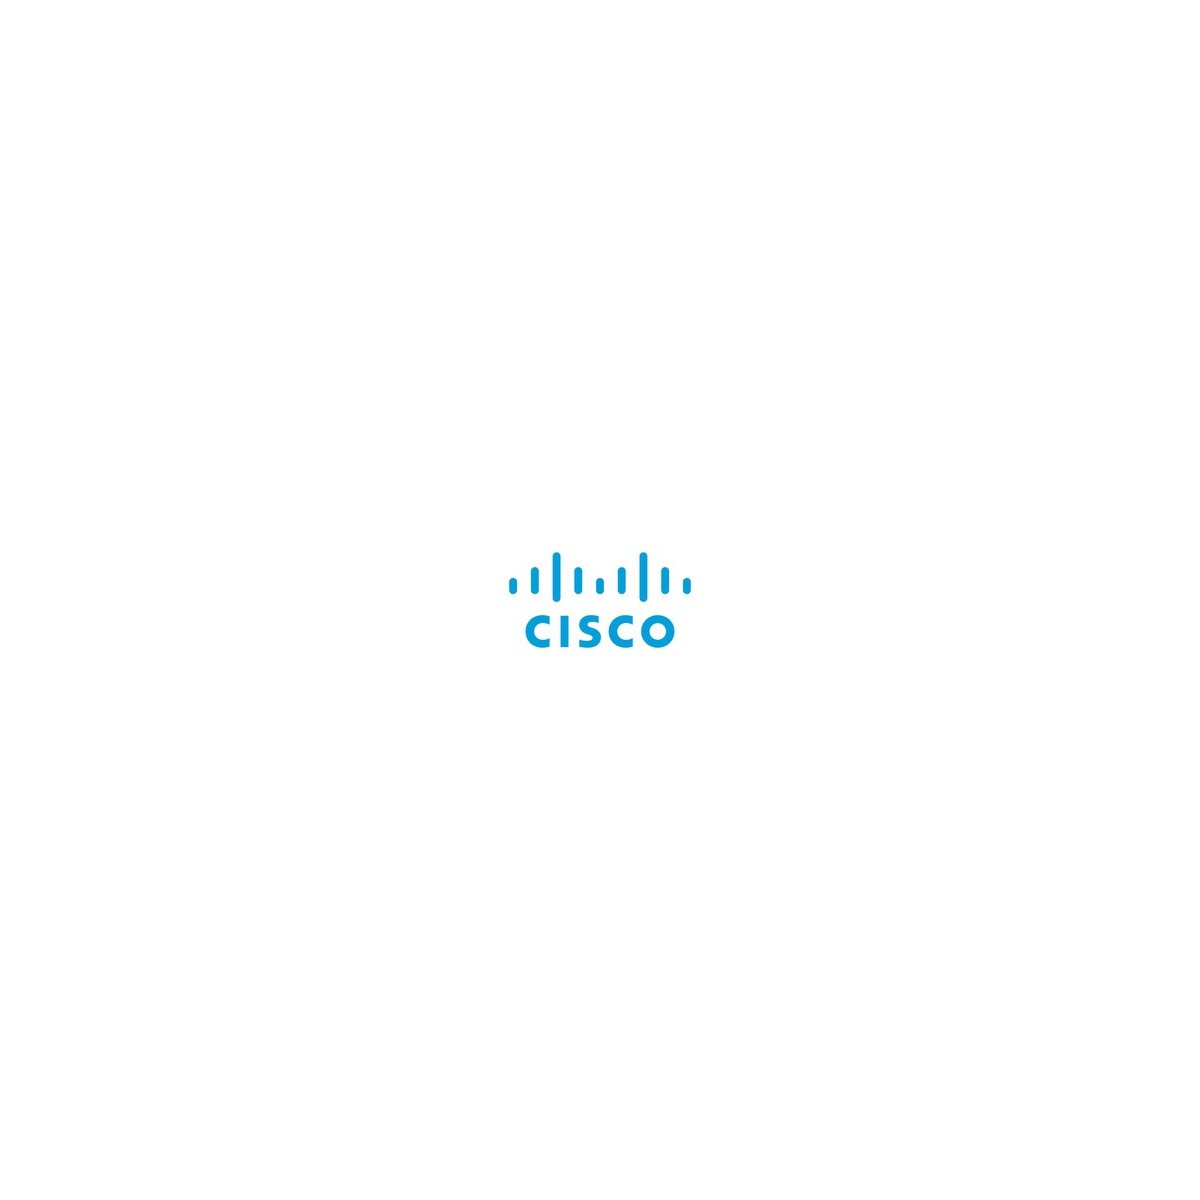 Cisco 9500 DNA Essentials to Advantage 3 Year License - 1 license(s) - Upgrade